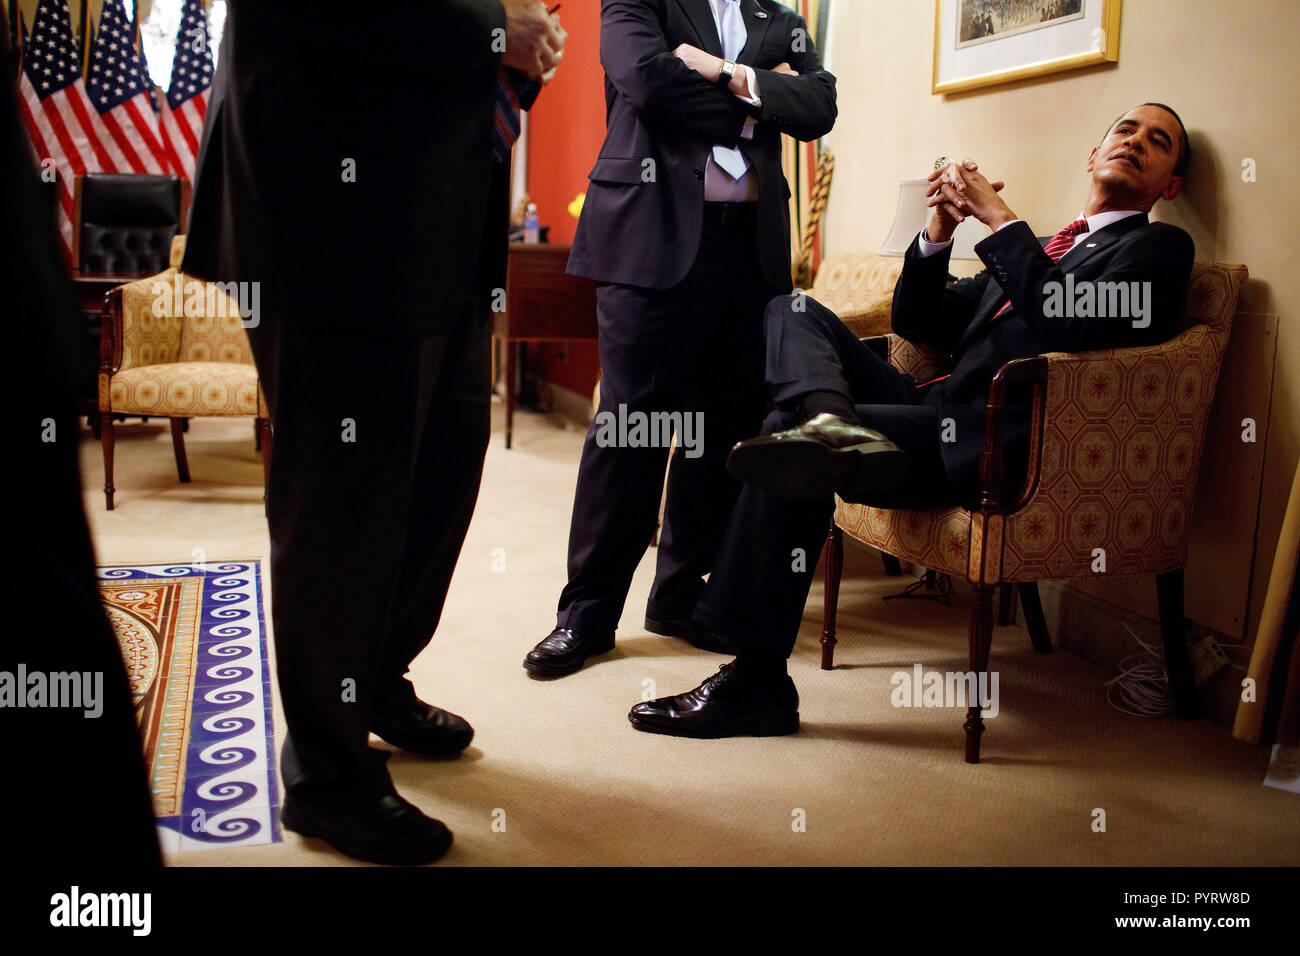 Il presidente Barack Obama ha un momento da solo con premere il Segretario Robert Gibbs e Senior Advisor David Axelrod prima di affrontare la sessione congiunta del Congresso degli Stati Uniti presso l'U.S. Capitol in Washington, D.C. 2/24/09. Foto Stock